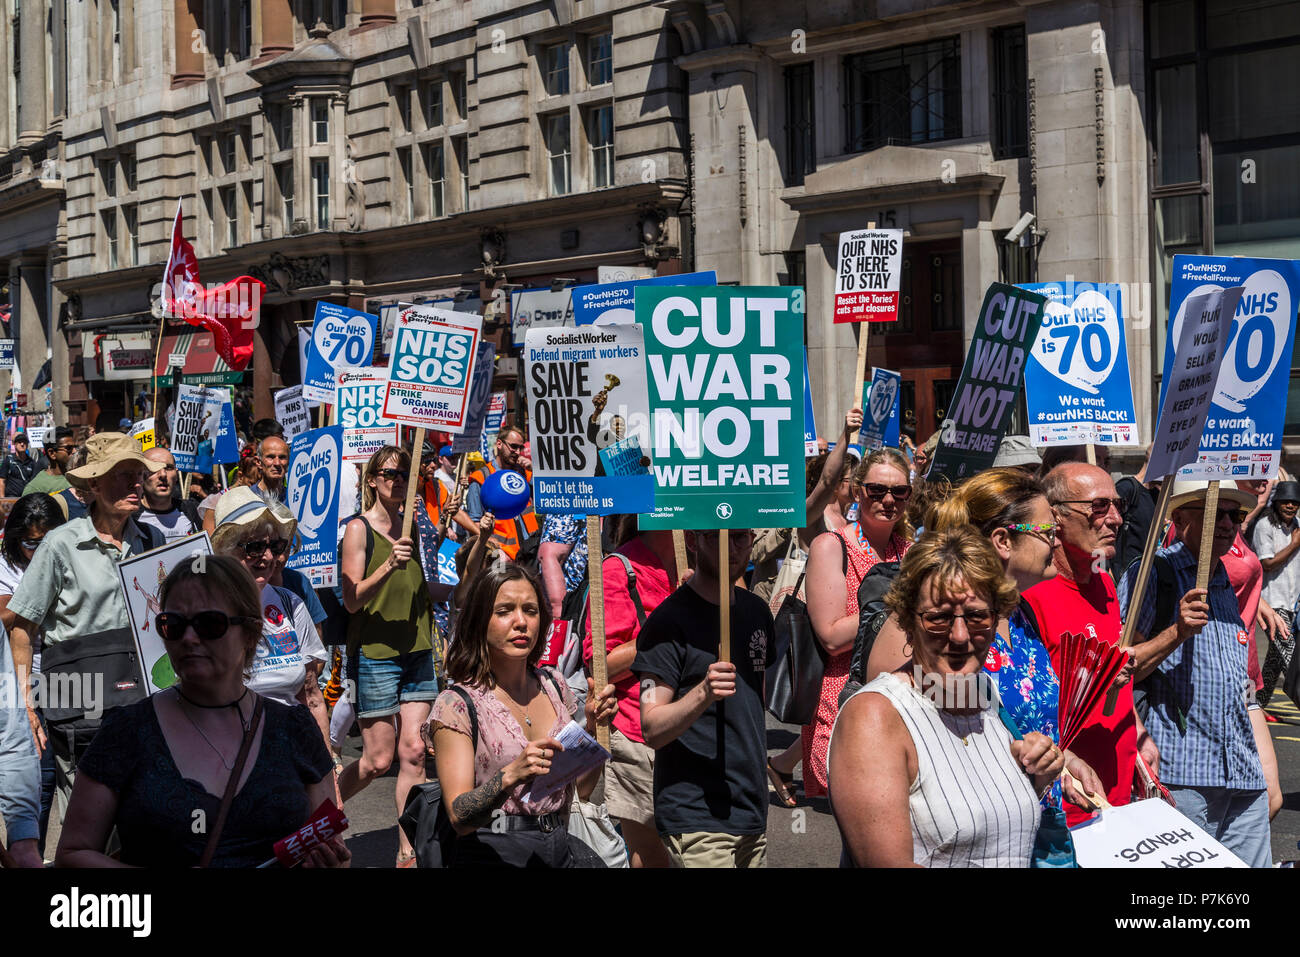 NHS 70e anniversaire mars organisée par l'Assemblée du Peuple, couper la guerre non pas du bien-être social placard, London, UK, 30/06/2018 Banque D'Images